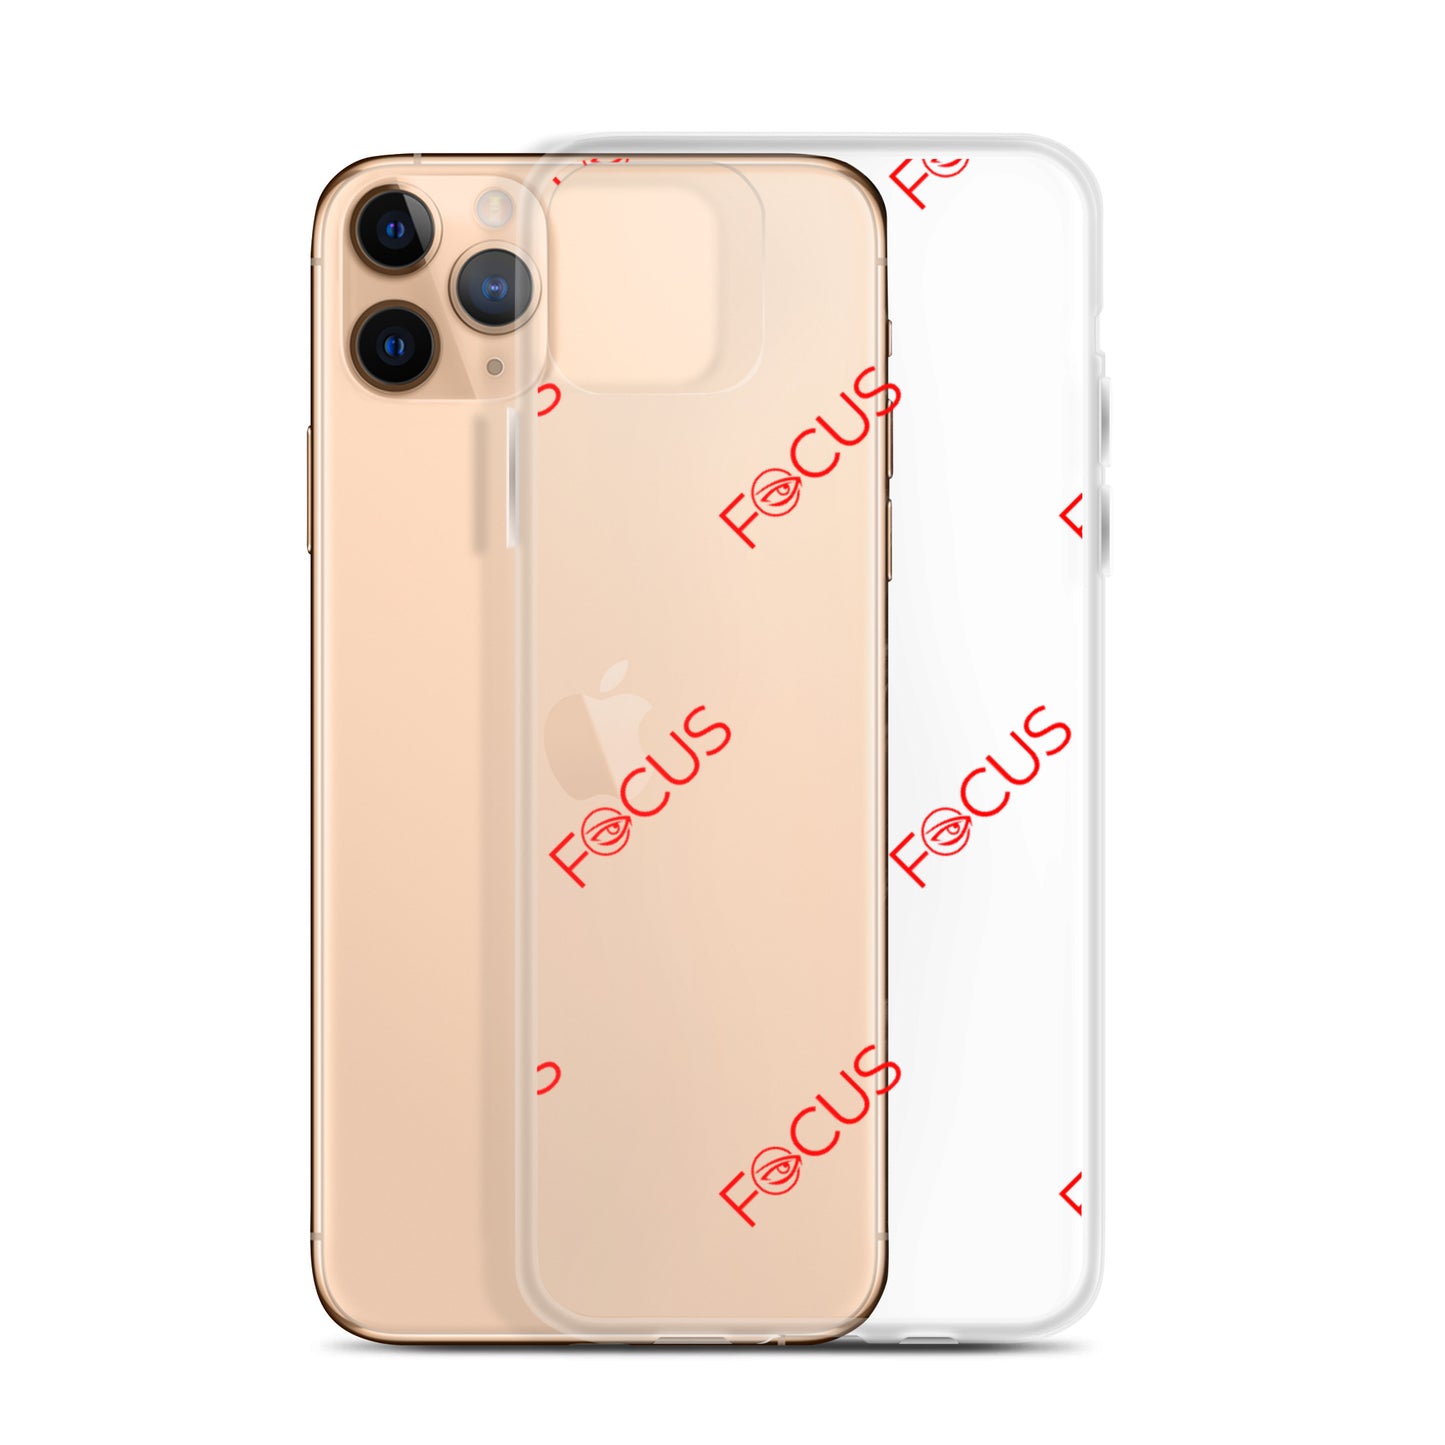 "FOCUS" iPhone Case